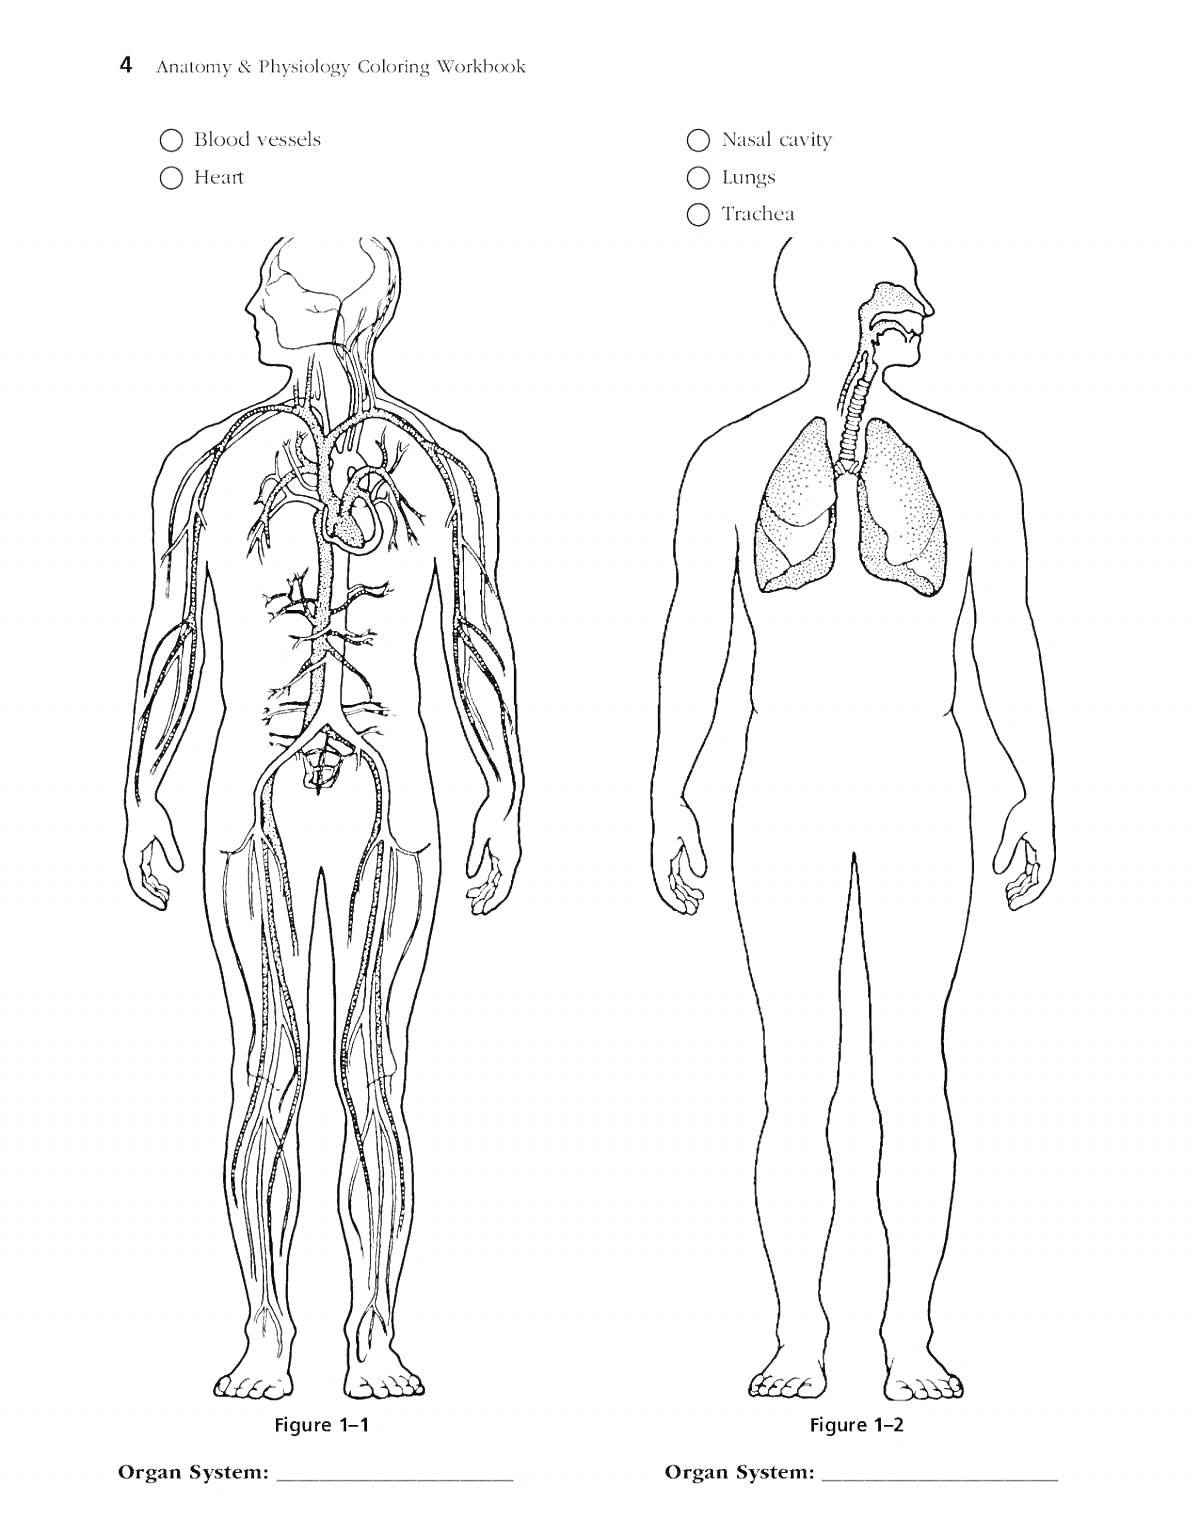 Раскраска Анатомия и физиология: кровеносная система и дыхательная система человека